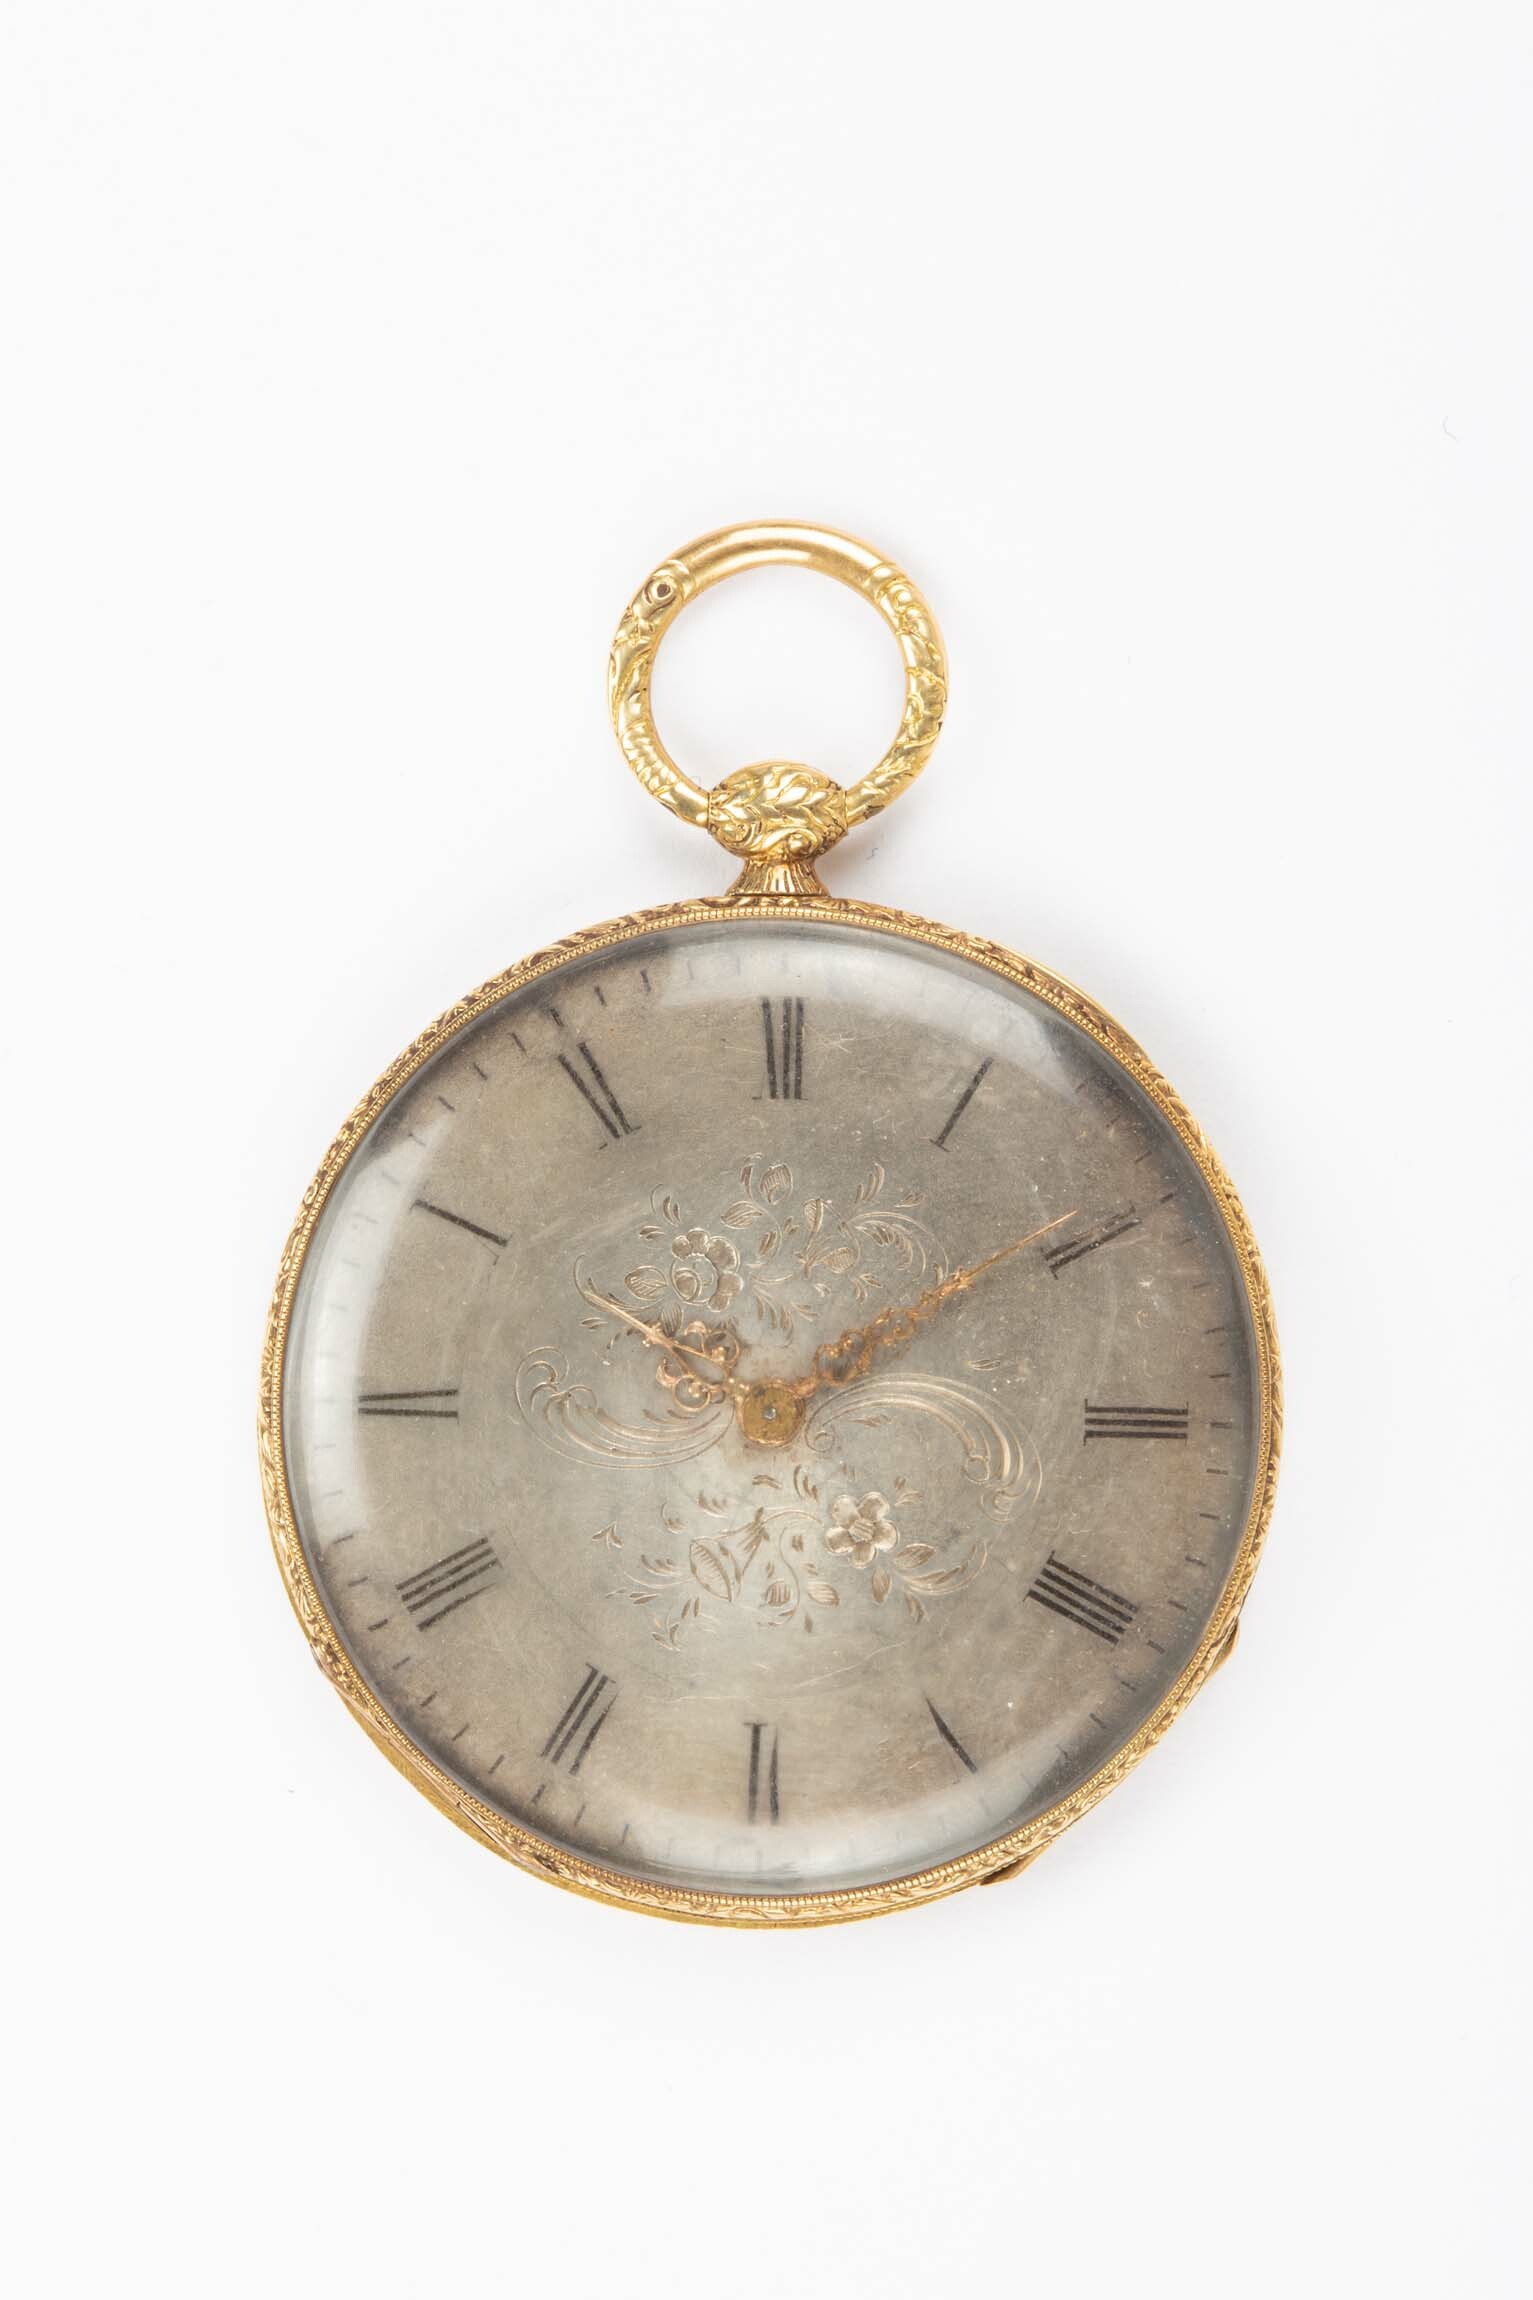 Taschenuhr, Bauart Bagnolet, wohl Schweiz, um 1850 (Deutsches Uhrenmuseum CC BY-SA)